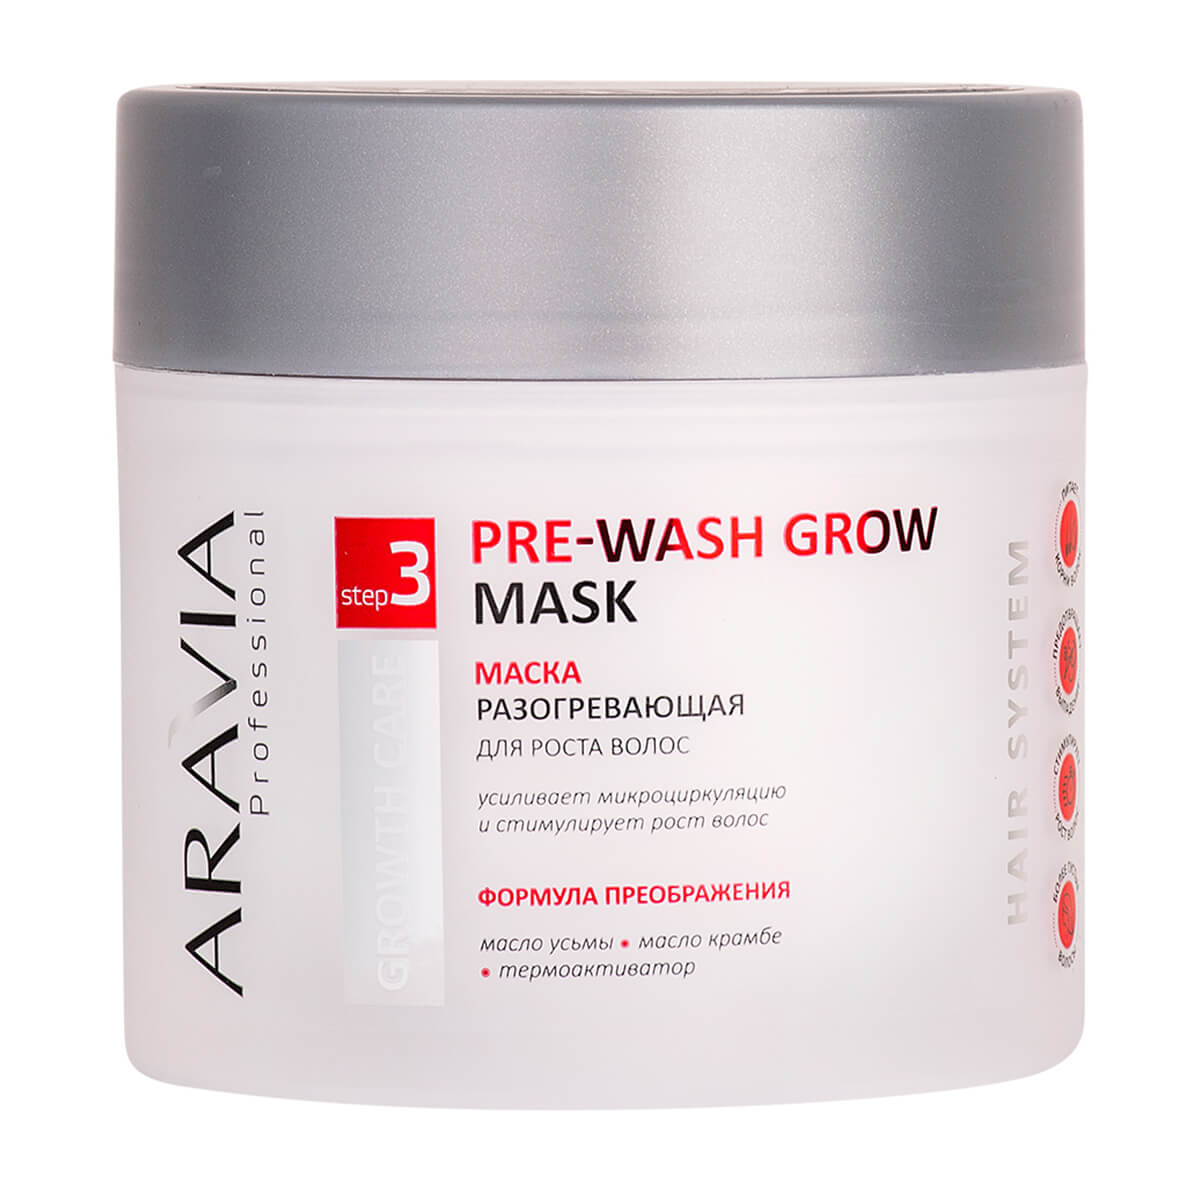 Маска разогревающая для роста волос Pre-wash Grow Mask, 300 мл, Aravia